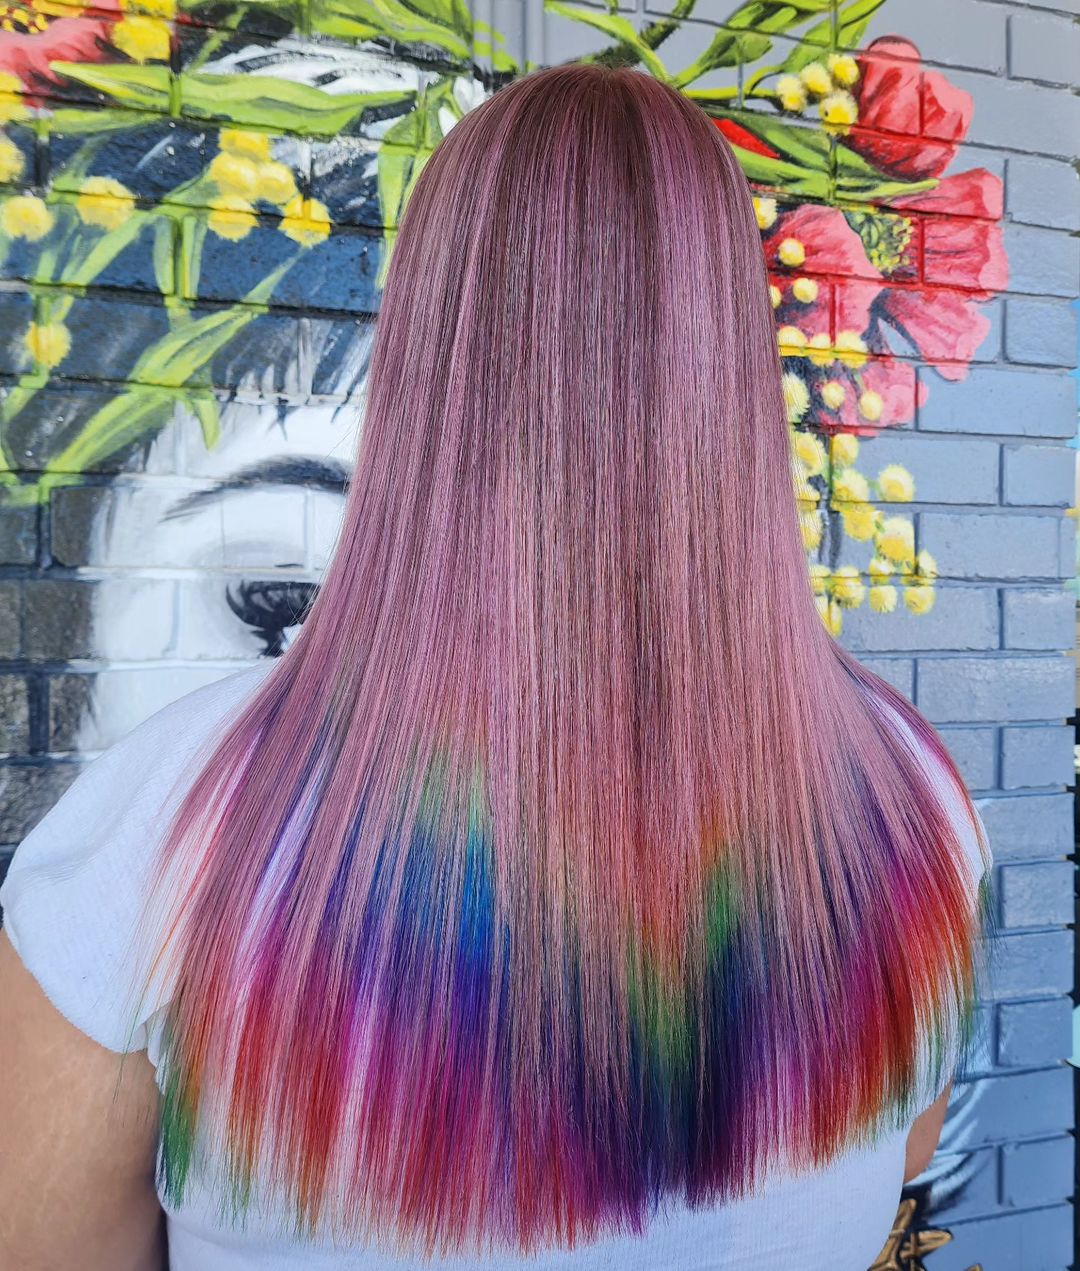 capelli lisci rosa con punte arcobaleno